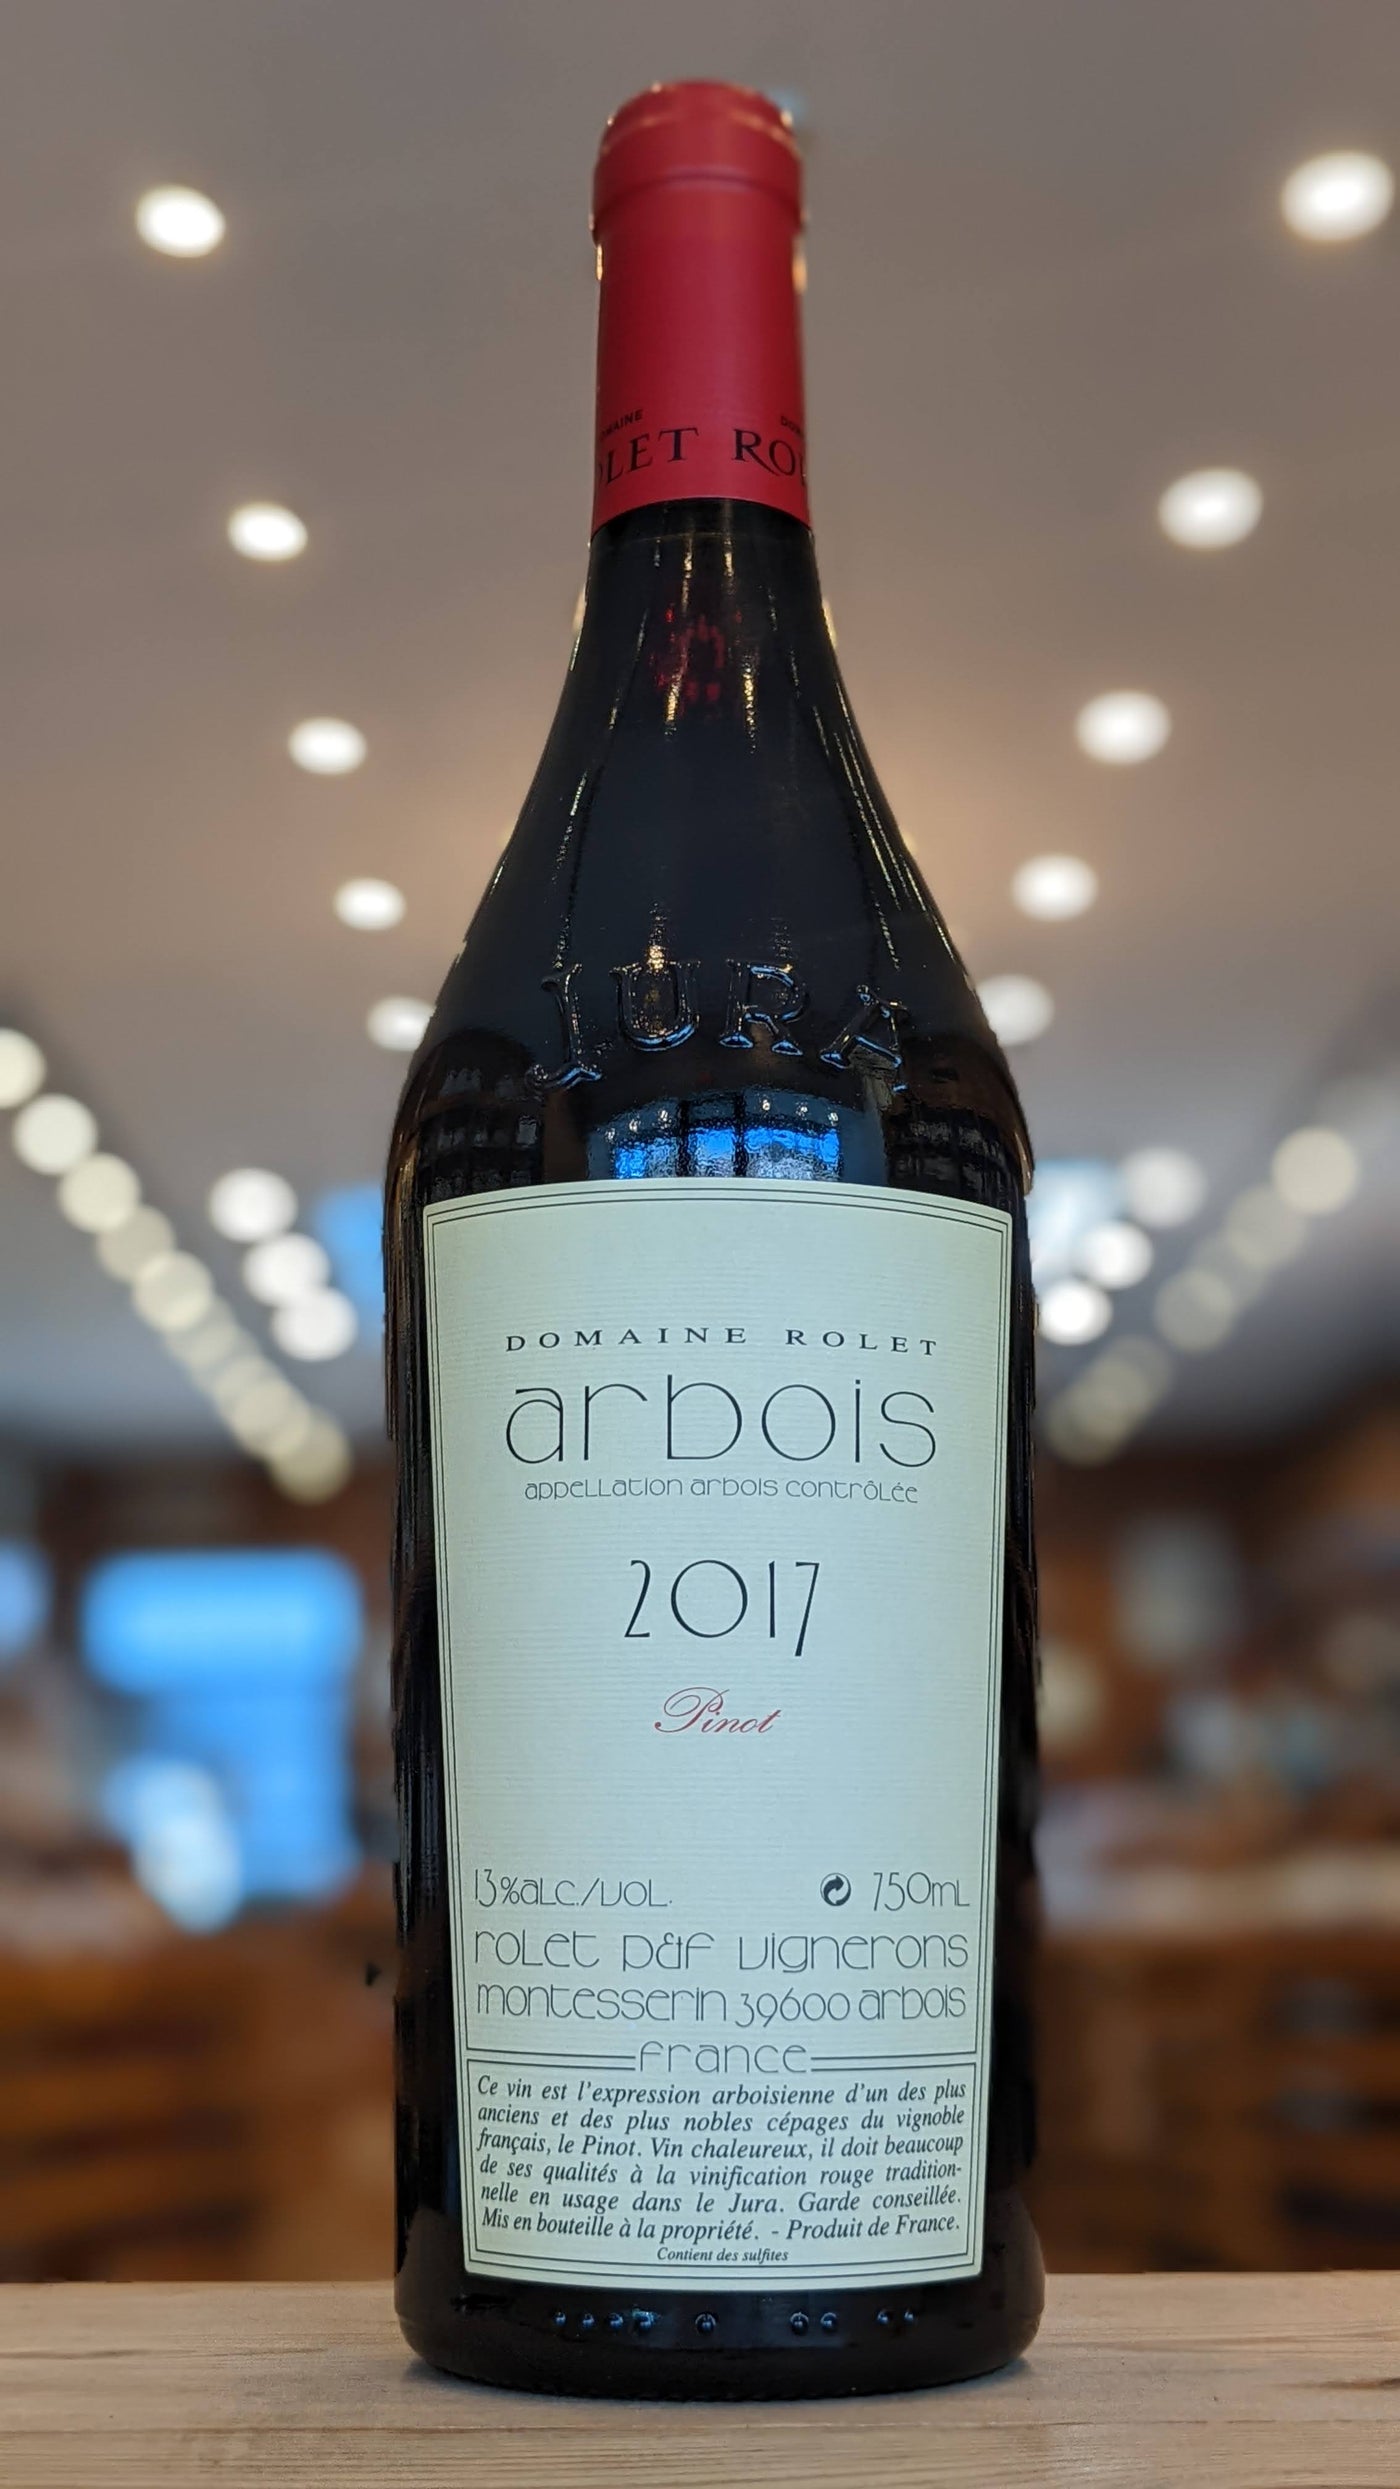 Domaine Rolet, Arbois, Pinot Noir 2017